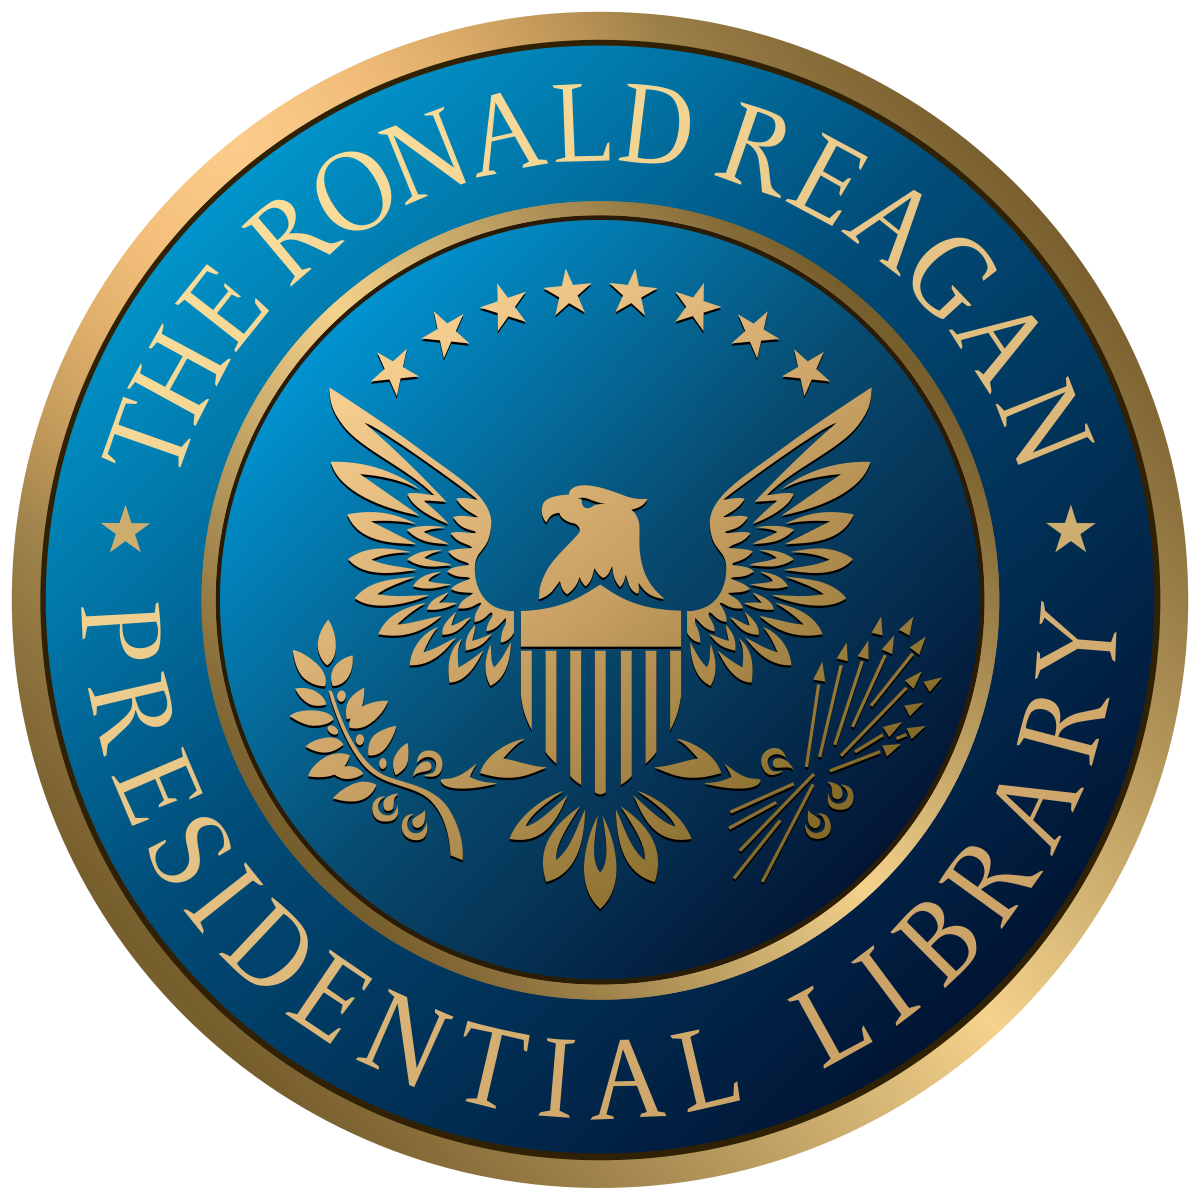 Ronald Reagan Library logo